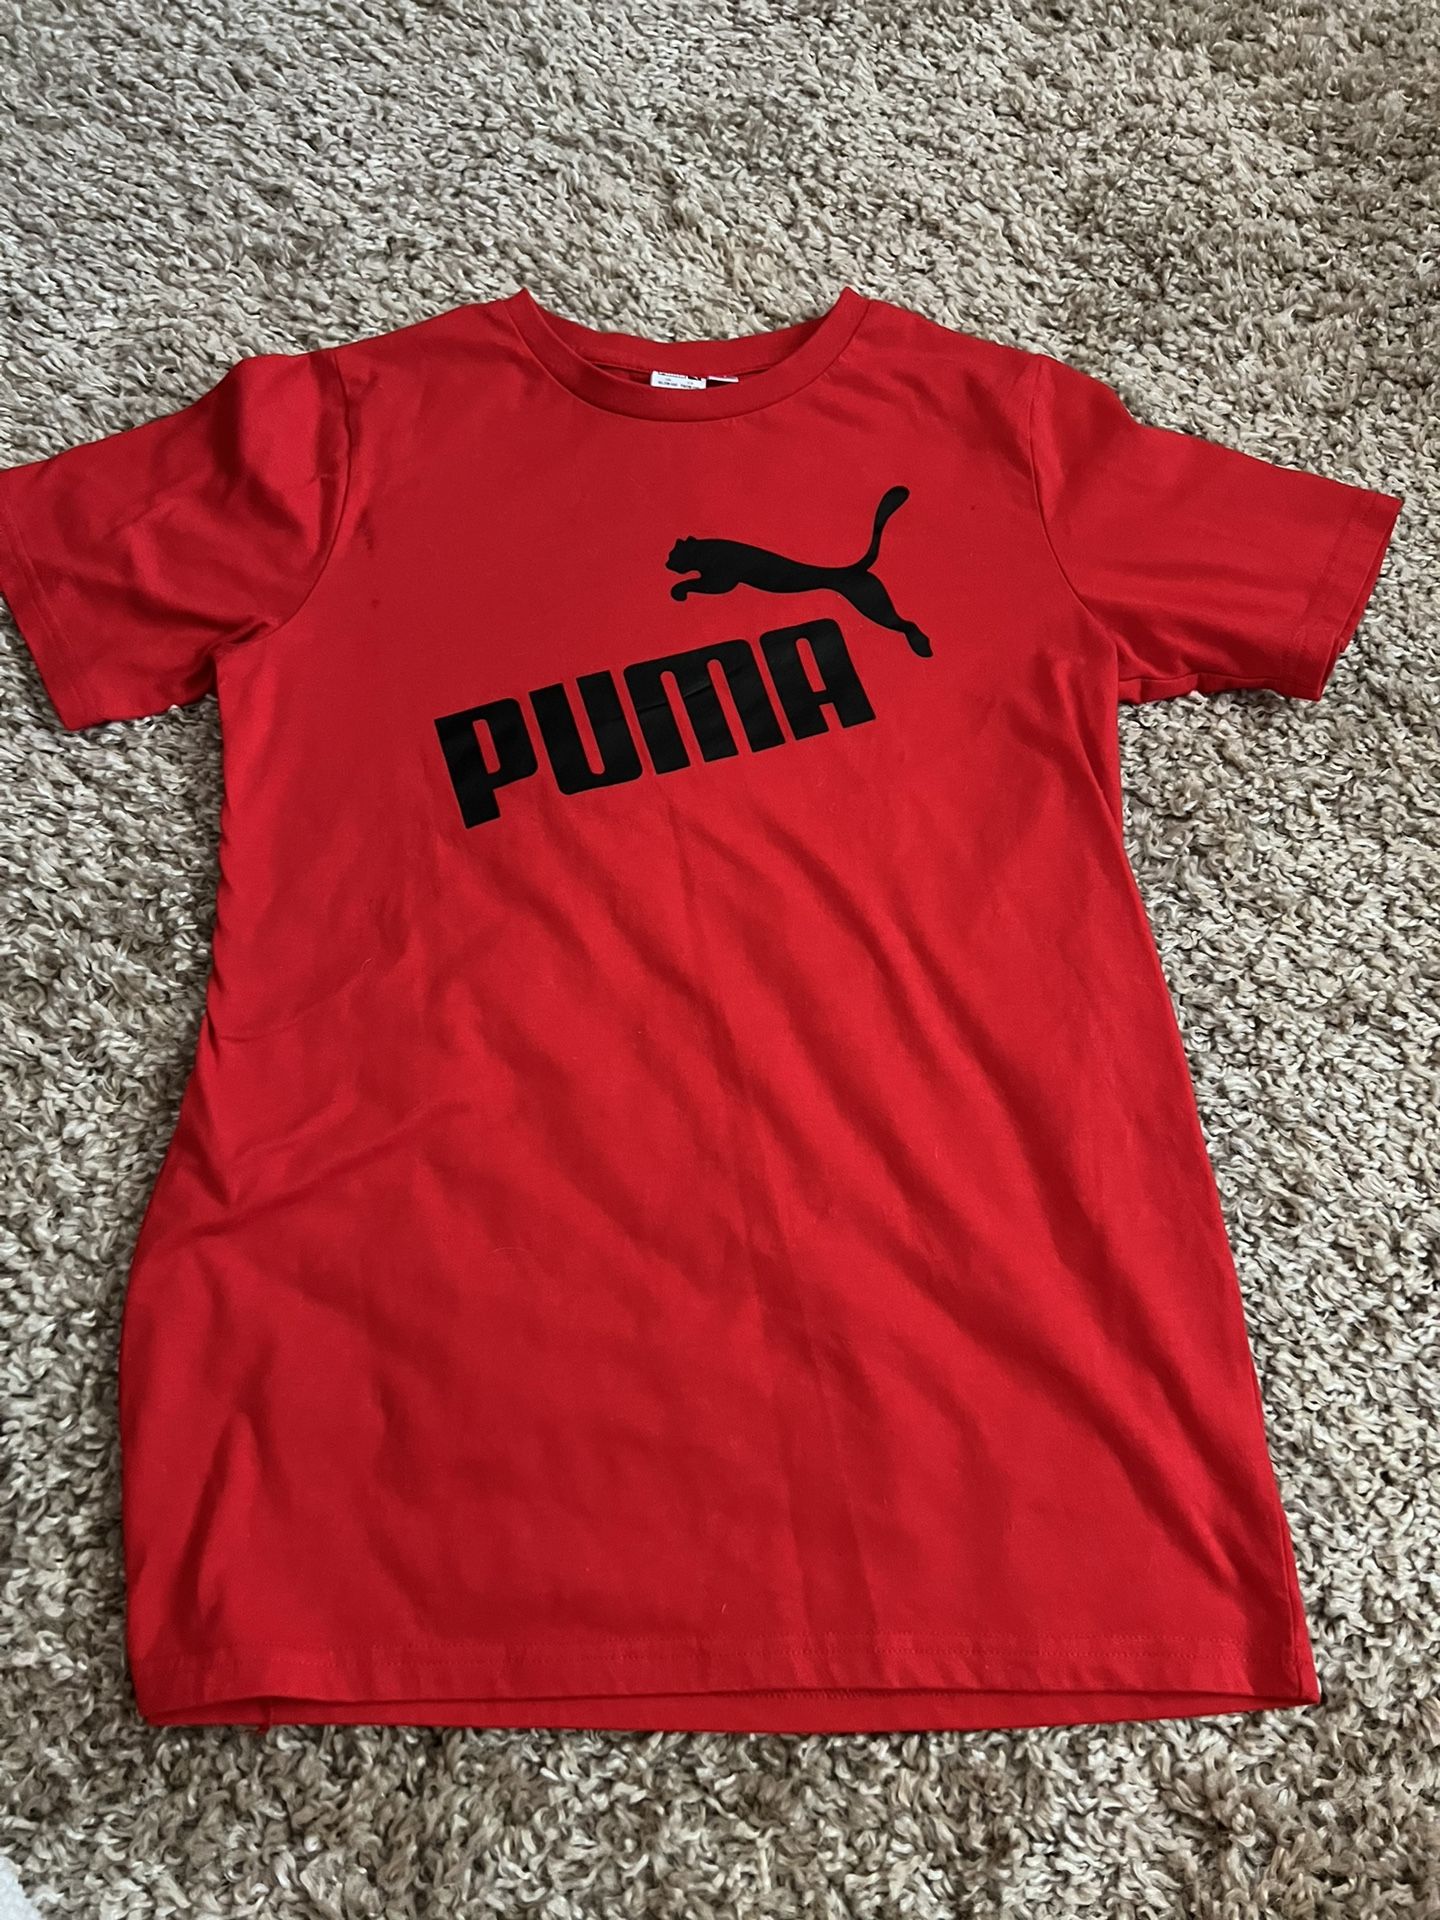 Boys Xl Puma Shirt 